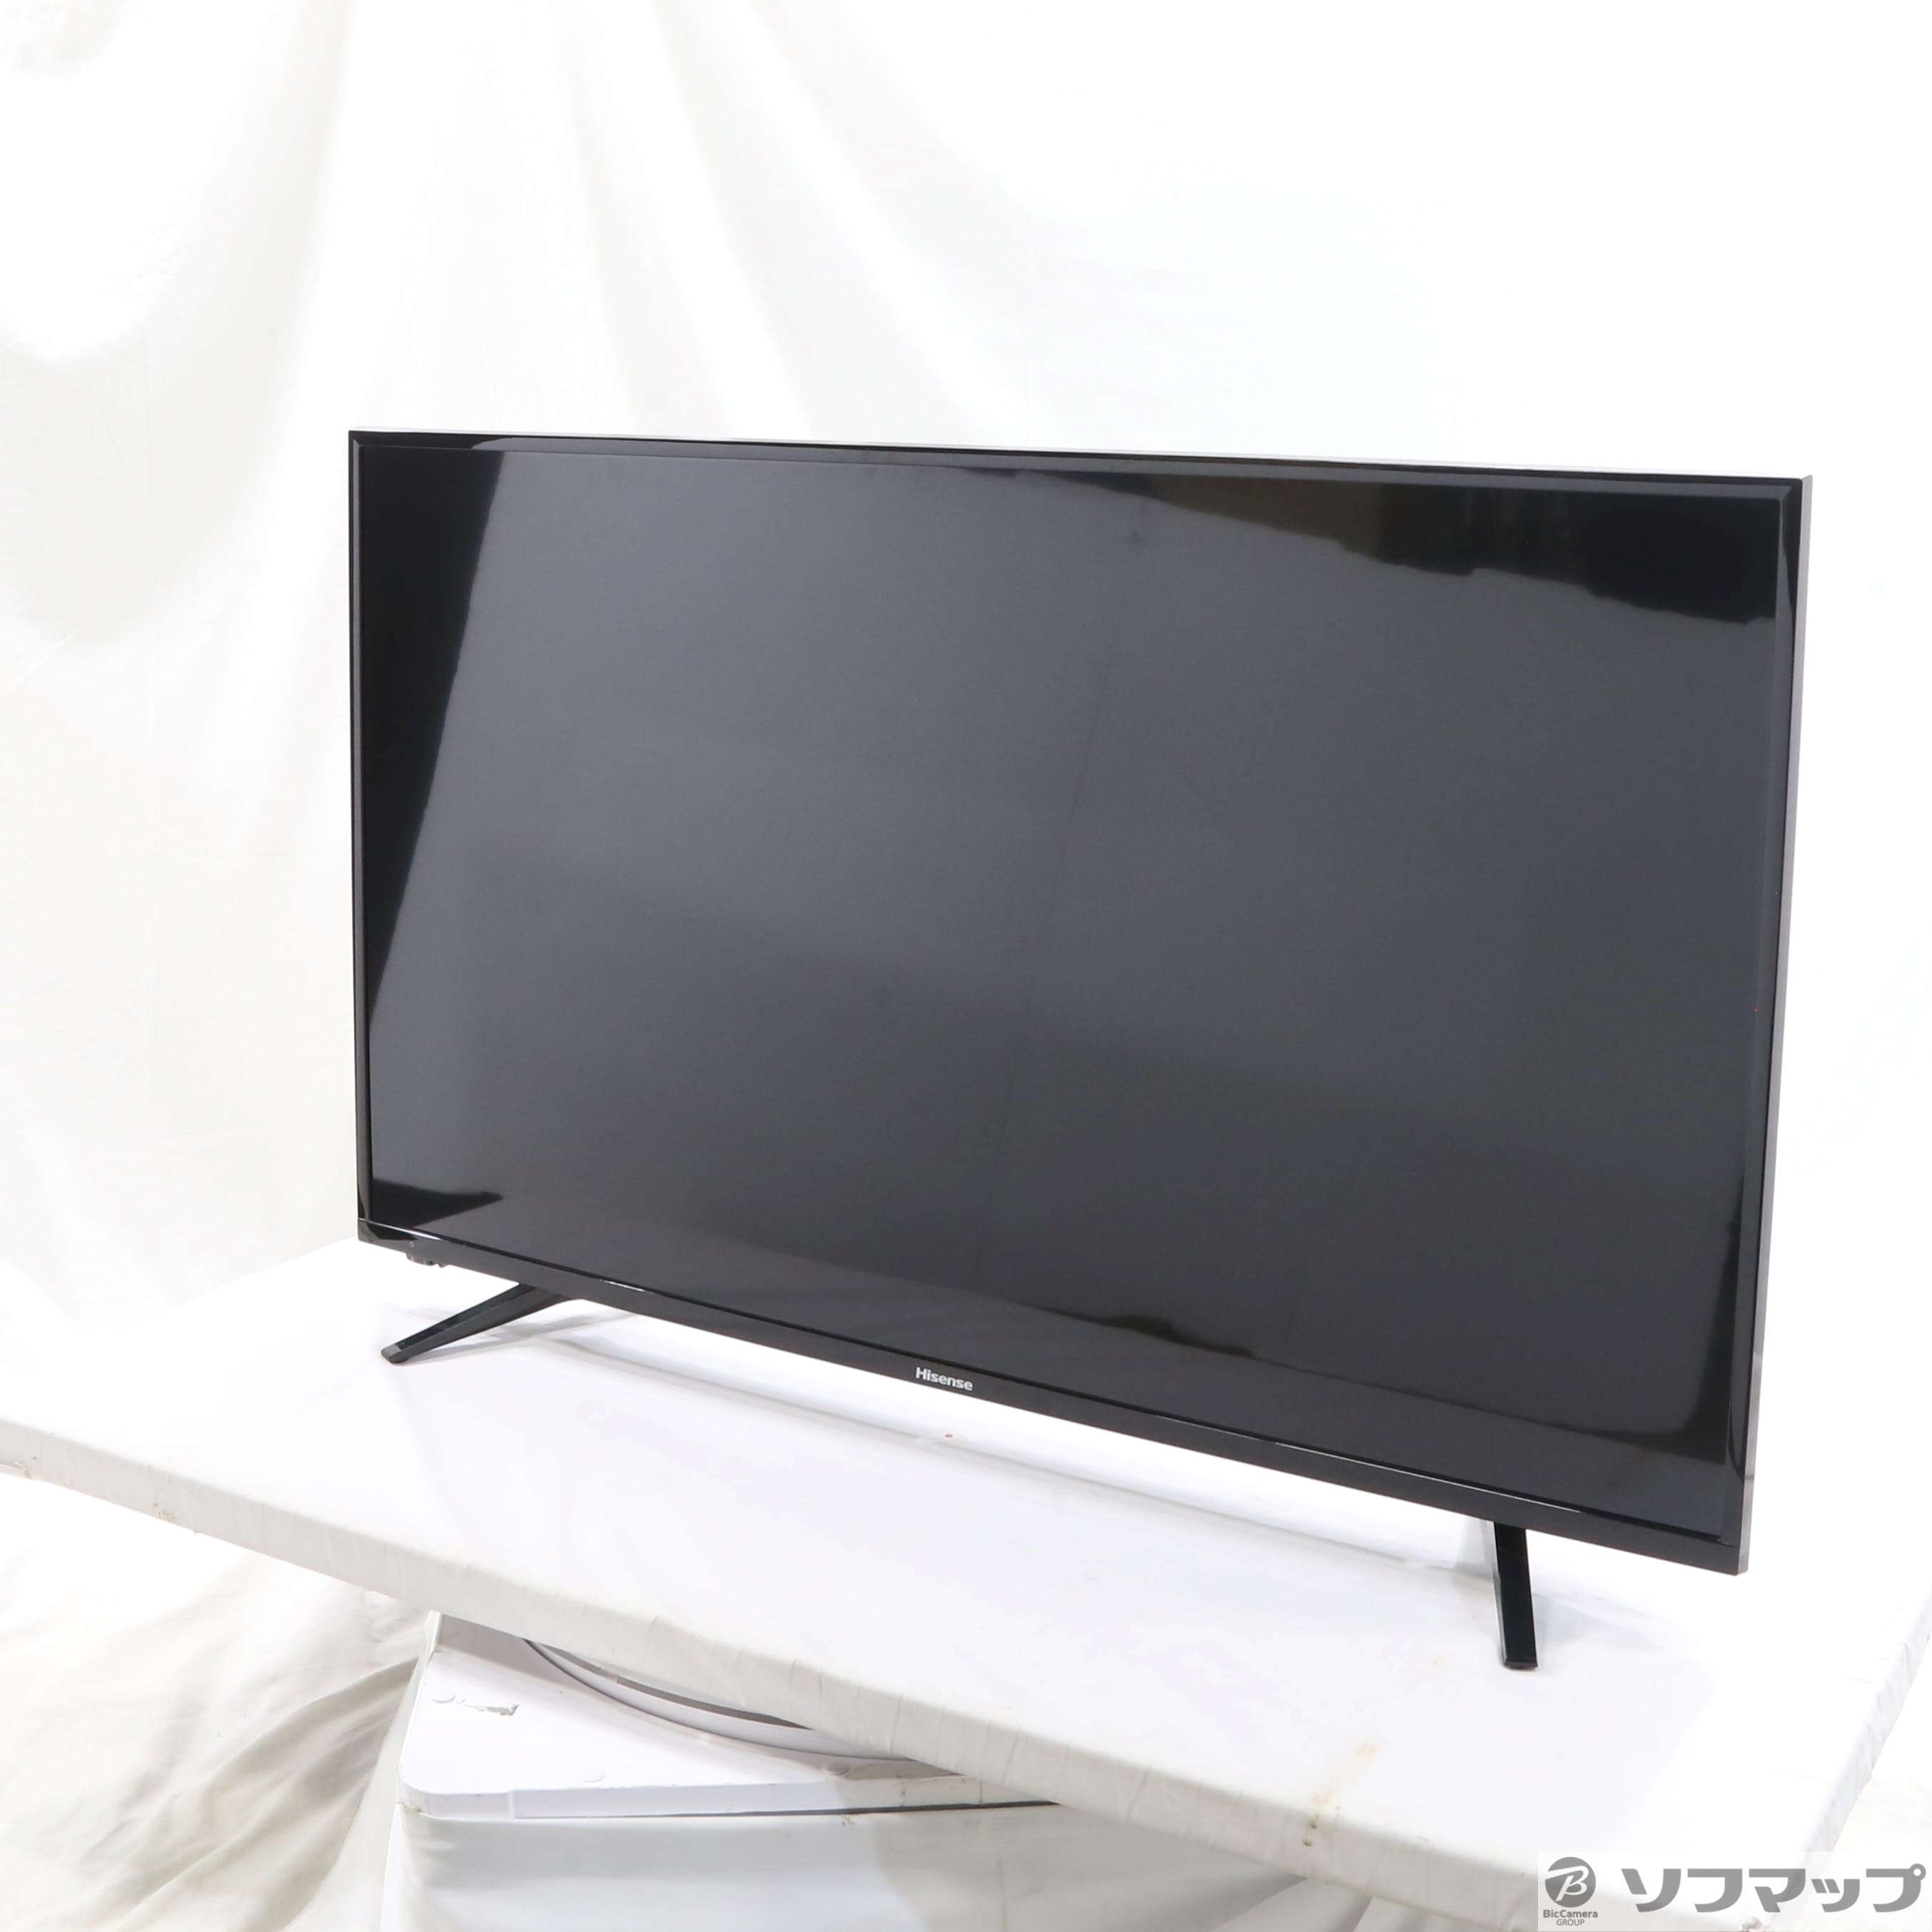 【美品】ハイセンス 43V型 液晶 テレビ 43A50 フルハイビジョン54900円